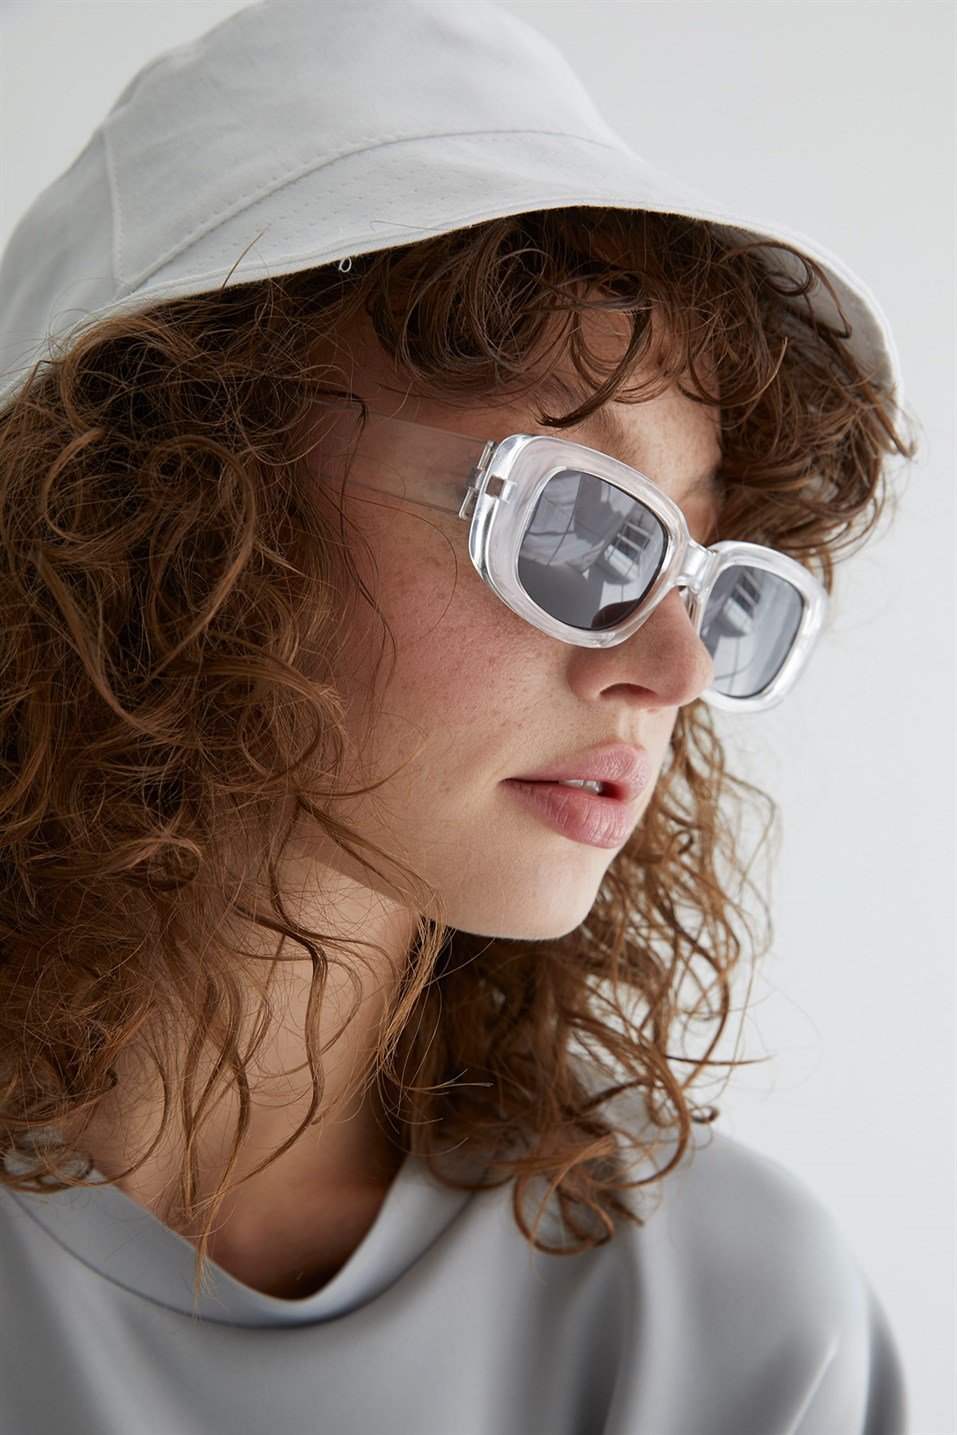 Transparent Classic Sunglasses